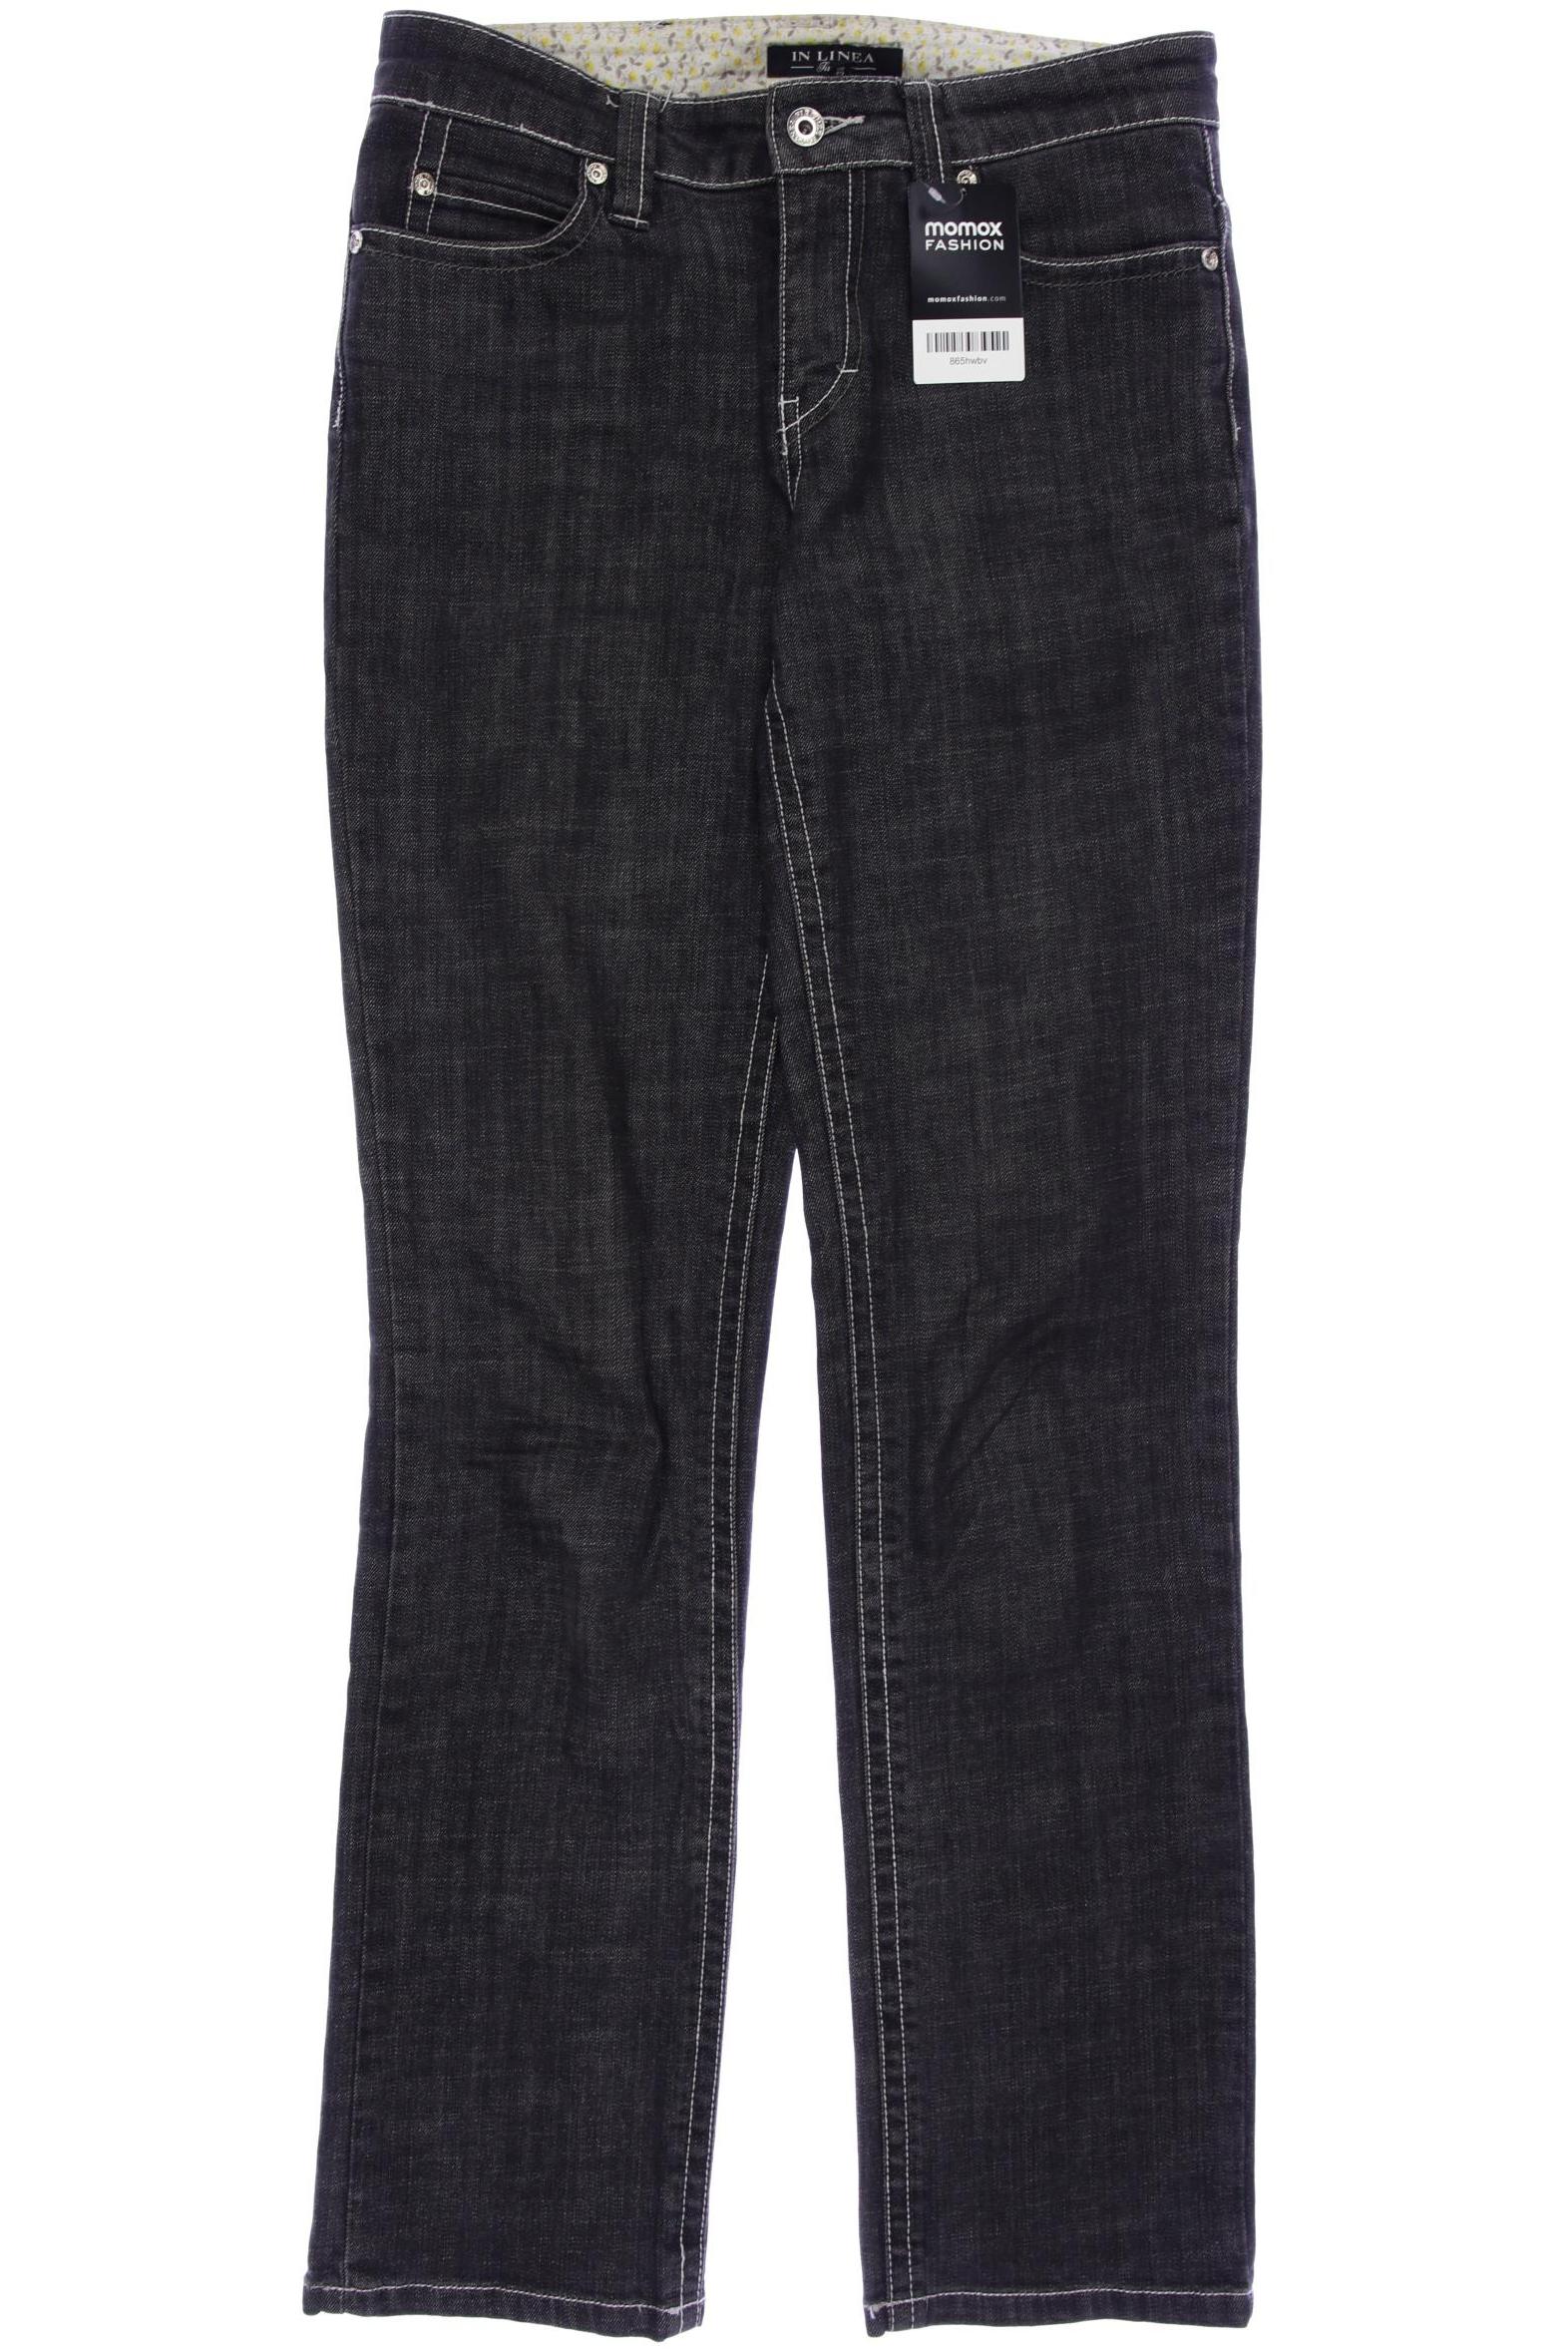 In Linea Damen Jeans, grau, Gr. 36 von In Linea